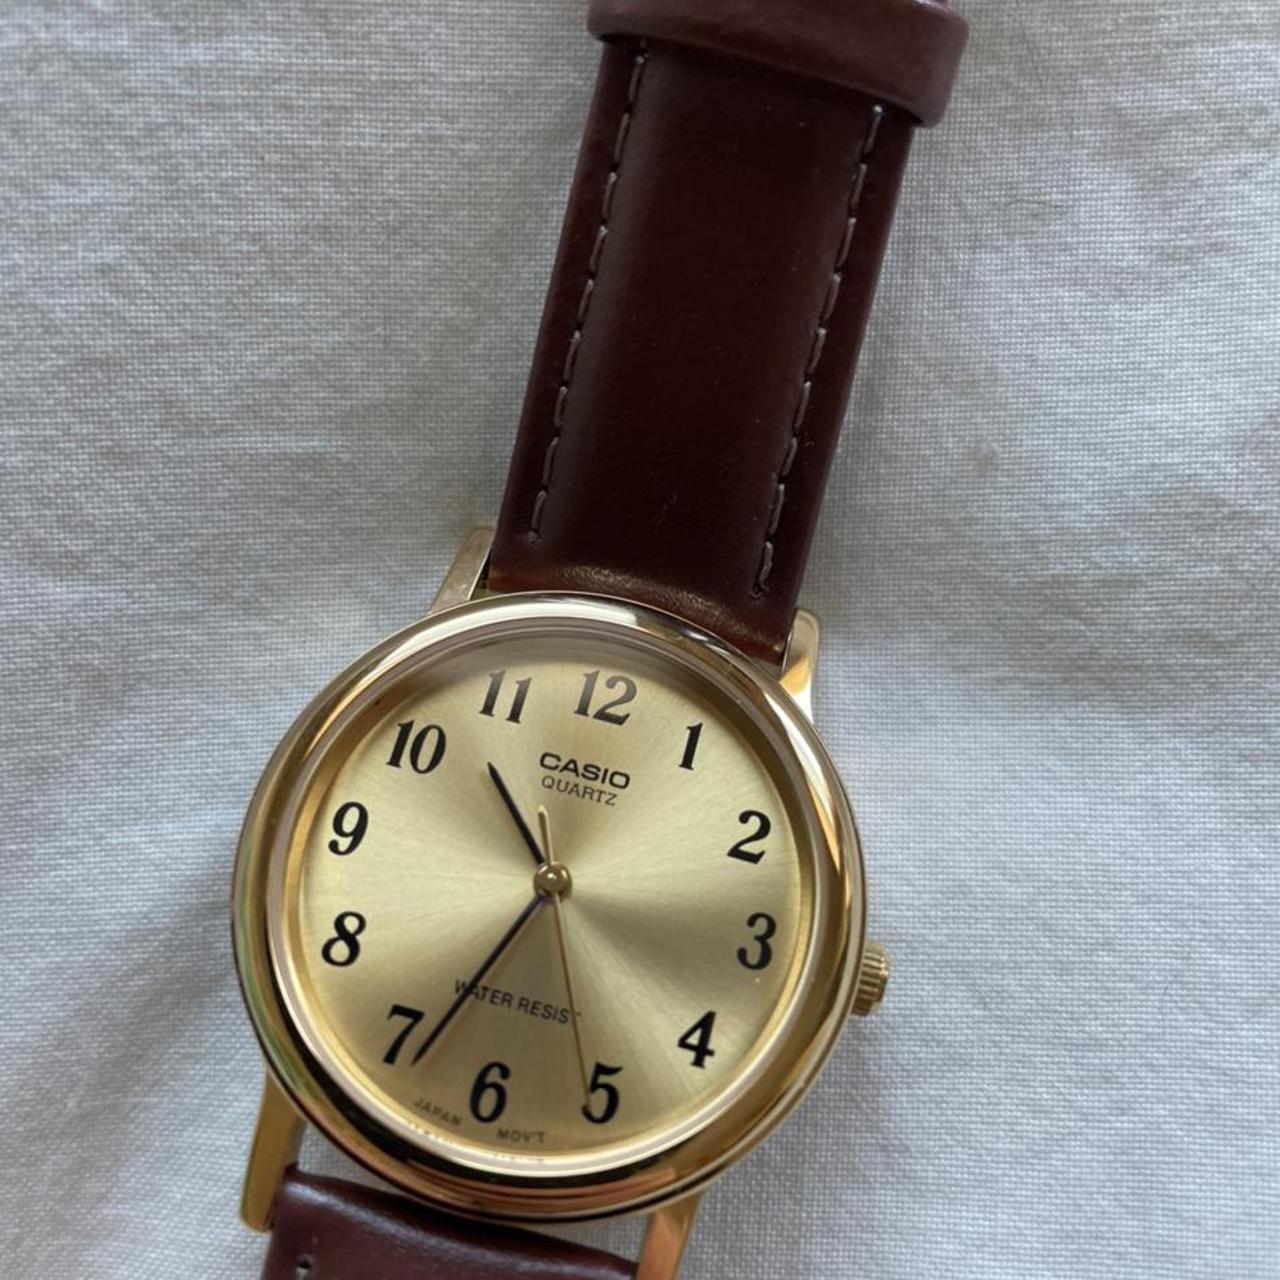 Product Image 1 - Casio quartz gold tone watch.